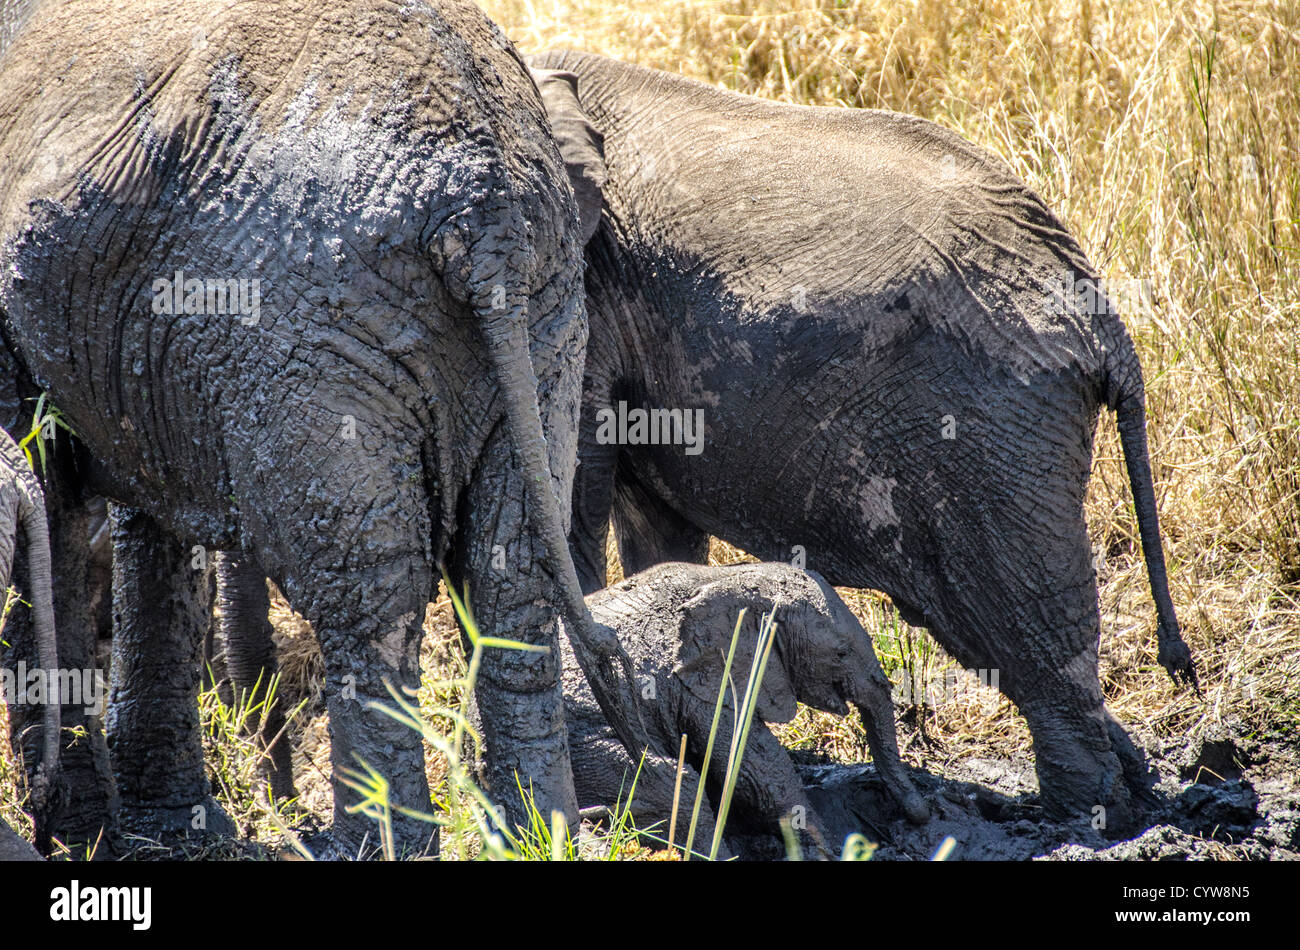 TARANGIRE-NATIONALPARK, Tansania - Im Tarangire-Nationalpark im Norden Tansanias, unweit des Ngorongoro-Kraters und der Serengeti, spielt Ein Elefant im Schlamm neben zwei viel größeren erwachsenen Elefanten. Der Ngorongoro-Krater, der zum UNESCO-Weltkulturerbe gehört, ist ein riesiger vulkanischer Krater im Norden Tansanias. Sie wurde vor 2-3 Millionen Jahren gegründet, hat einen Durchmesser von etwa 20 Kilometern und ist die Heimat vielfältiger Tiere, einschließlich der „Big Five“-Wildtiere. Das Ngorongoro-Schutzgebiet, das von den Maasai bewohnt wird, umfasst auch bedeutende archäologische Stätten wie die Olduvai-Schlucht und Laetoli, Stockfoto